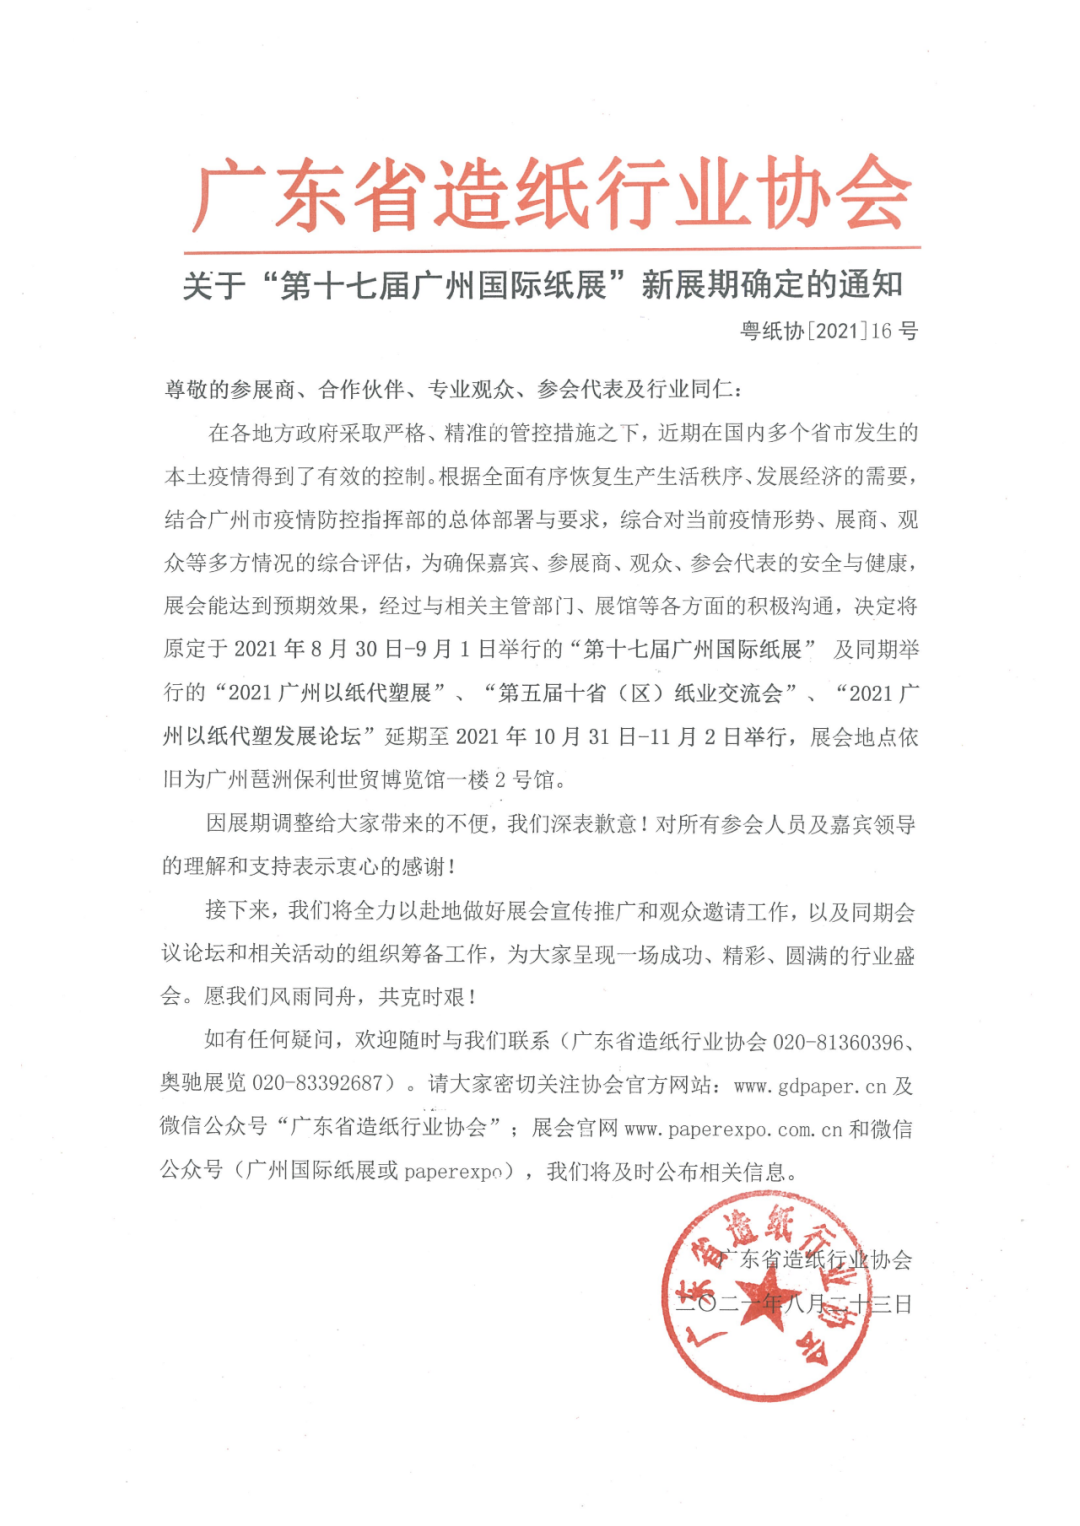 2021第17届广州国际纸展将于10月31日-11月2日举行